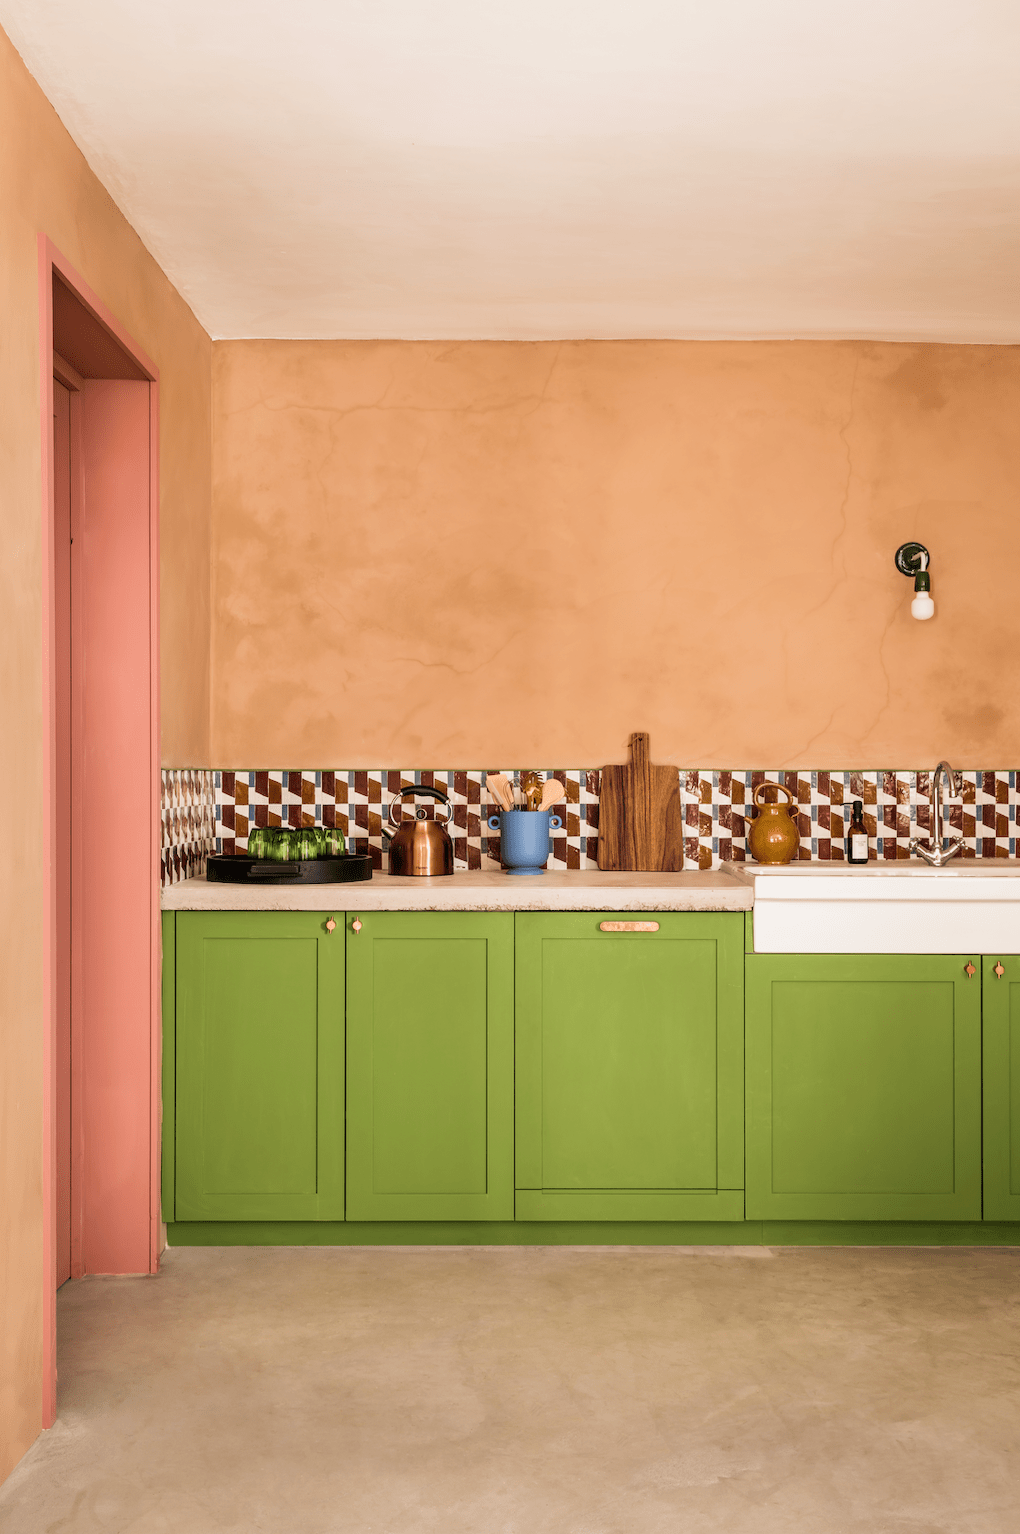 La cuisine où l’on imaginerait bien Wes Anderson tourner son prochain film. © Romain Ricard 